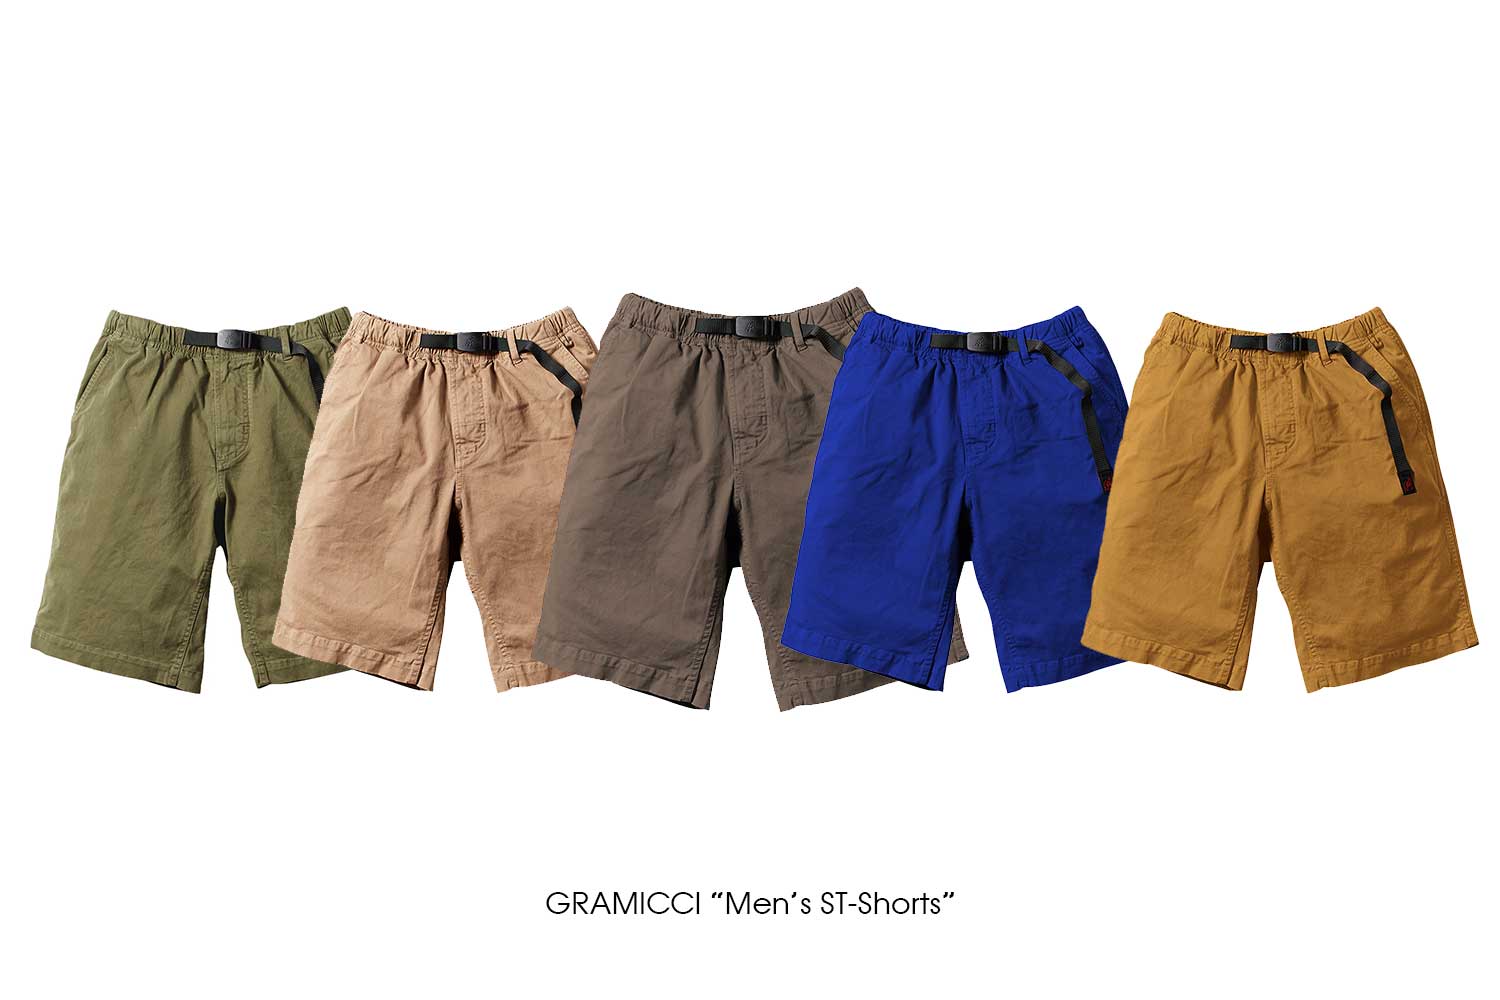 GRAMICCI "Men's ST-Shorts"